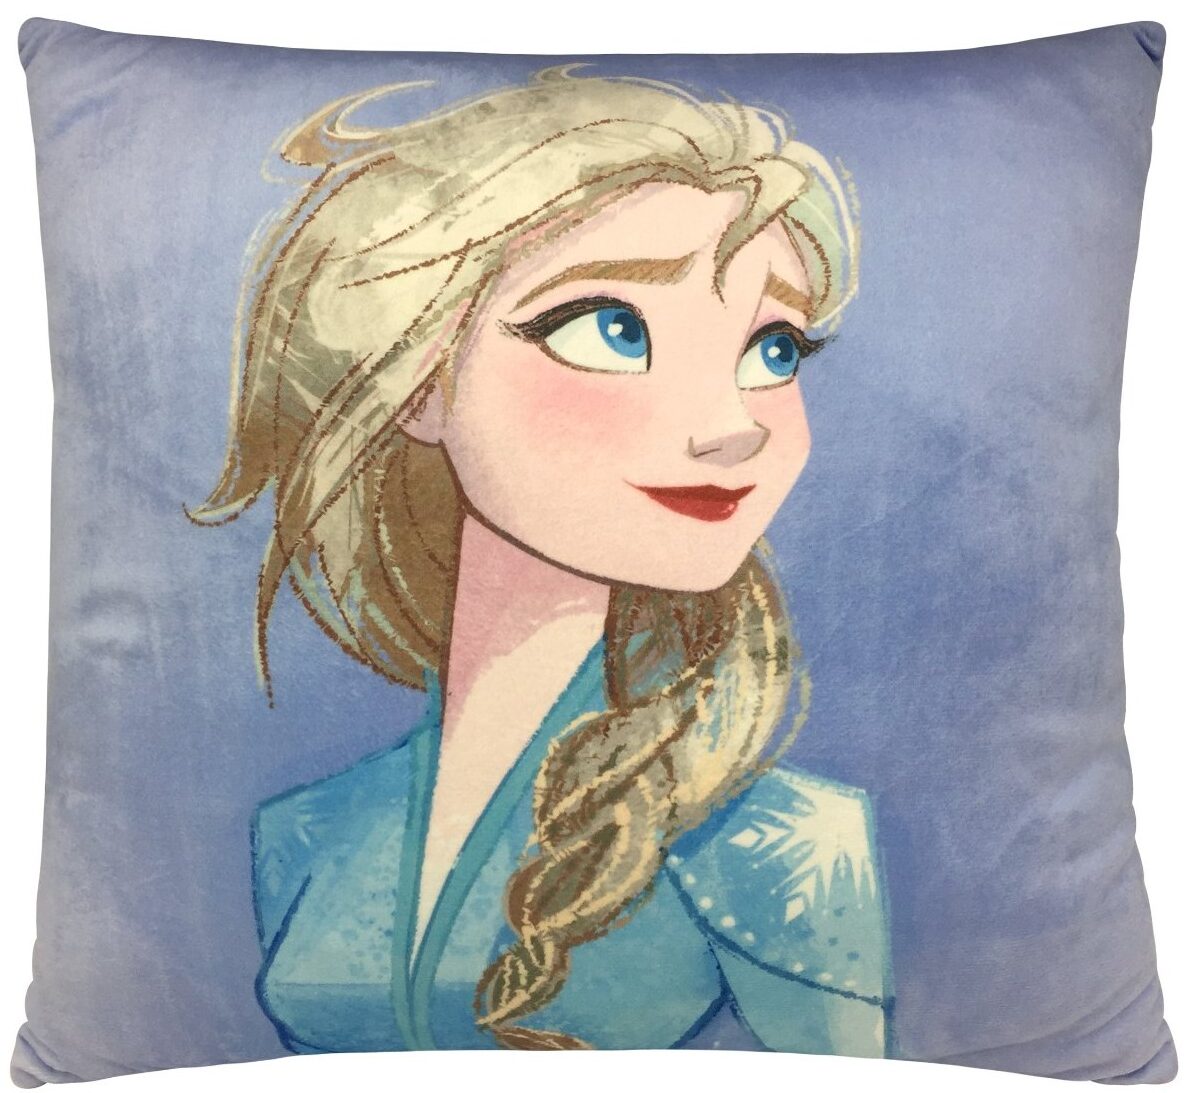 Frozen II Sisters Cushion